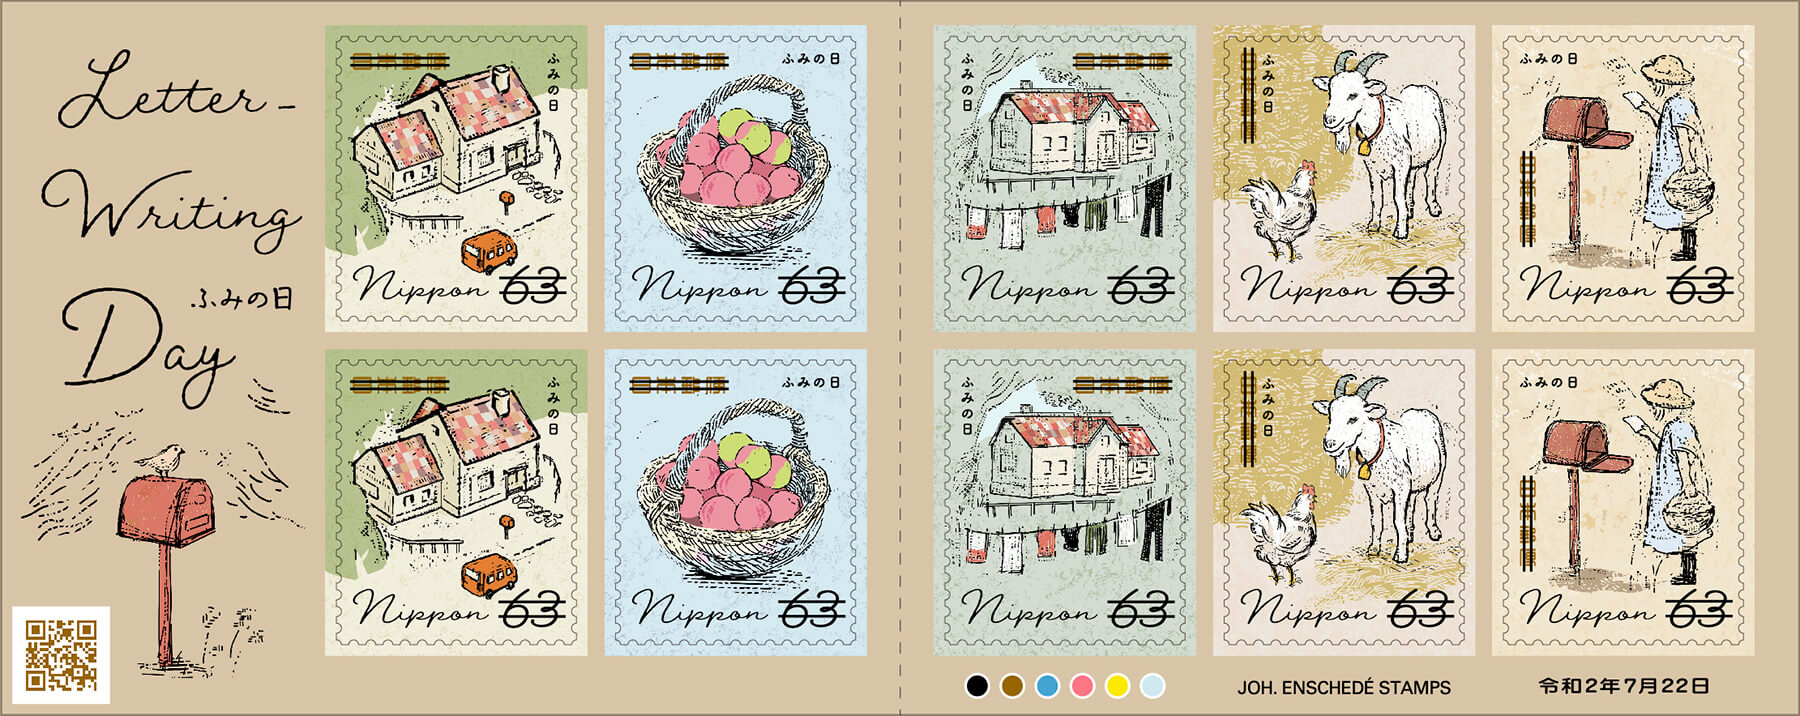 ふみの日にちなむ郵便切手」63円郵便切手／2020年7月22日発行